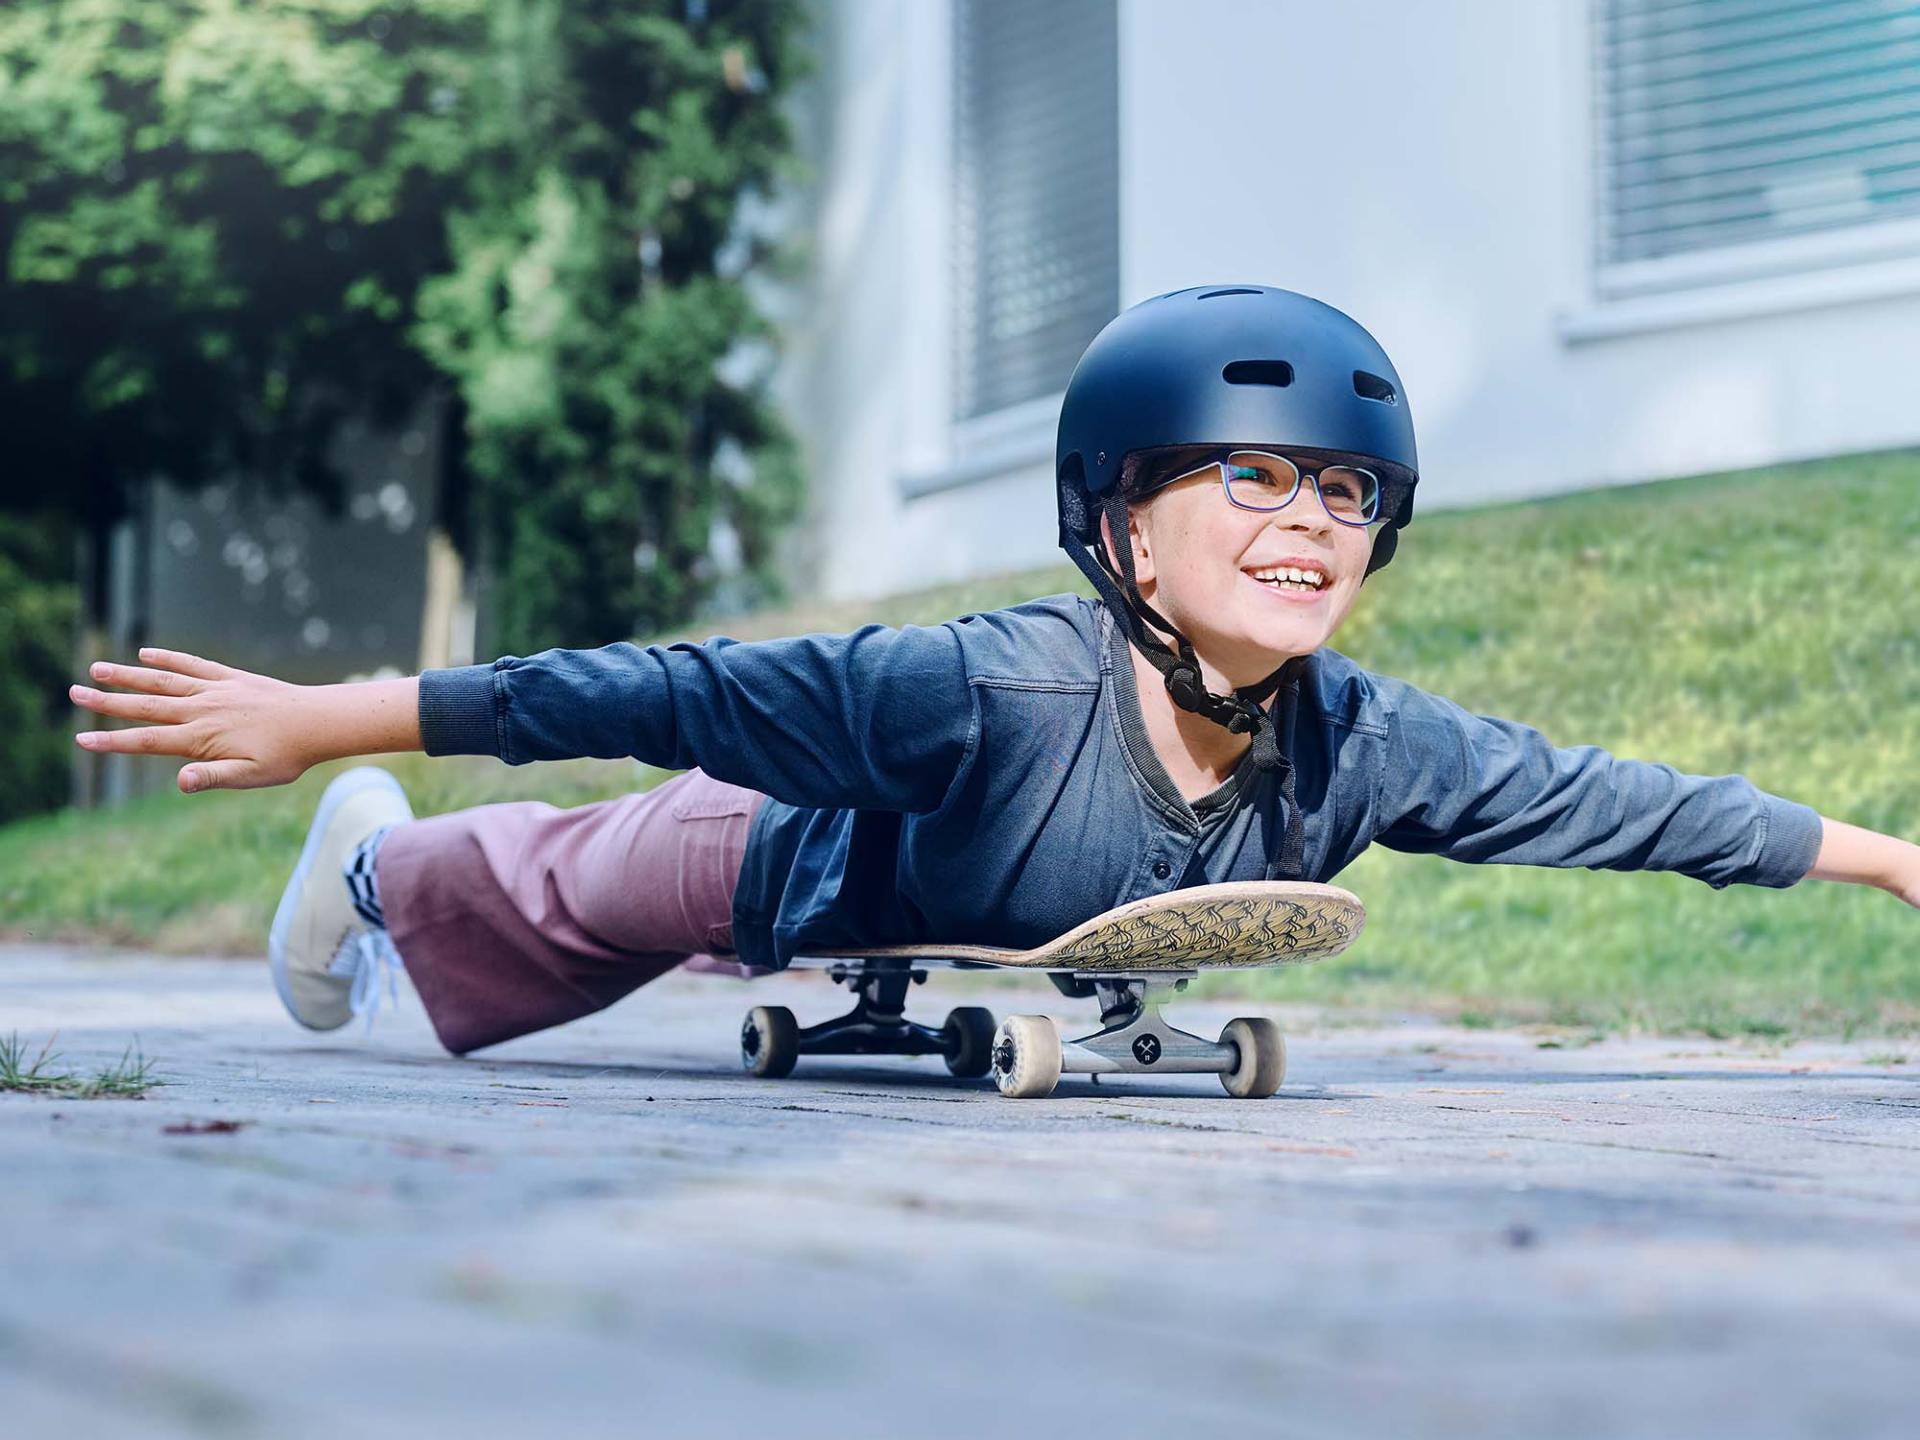 헬멧과 안경을 착용한 소녀가 스케이트 보드에 몸을 얹고 도로를 달리며 두 팔을 활짝 펼치고 있다.